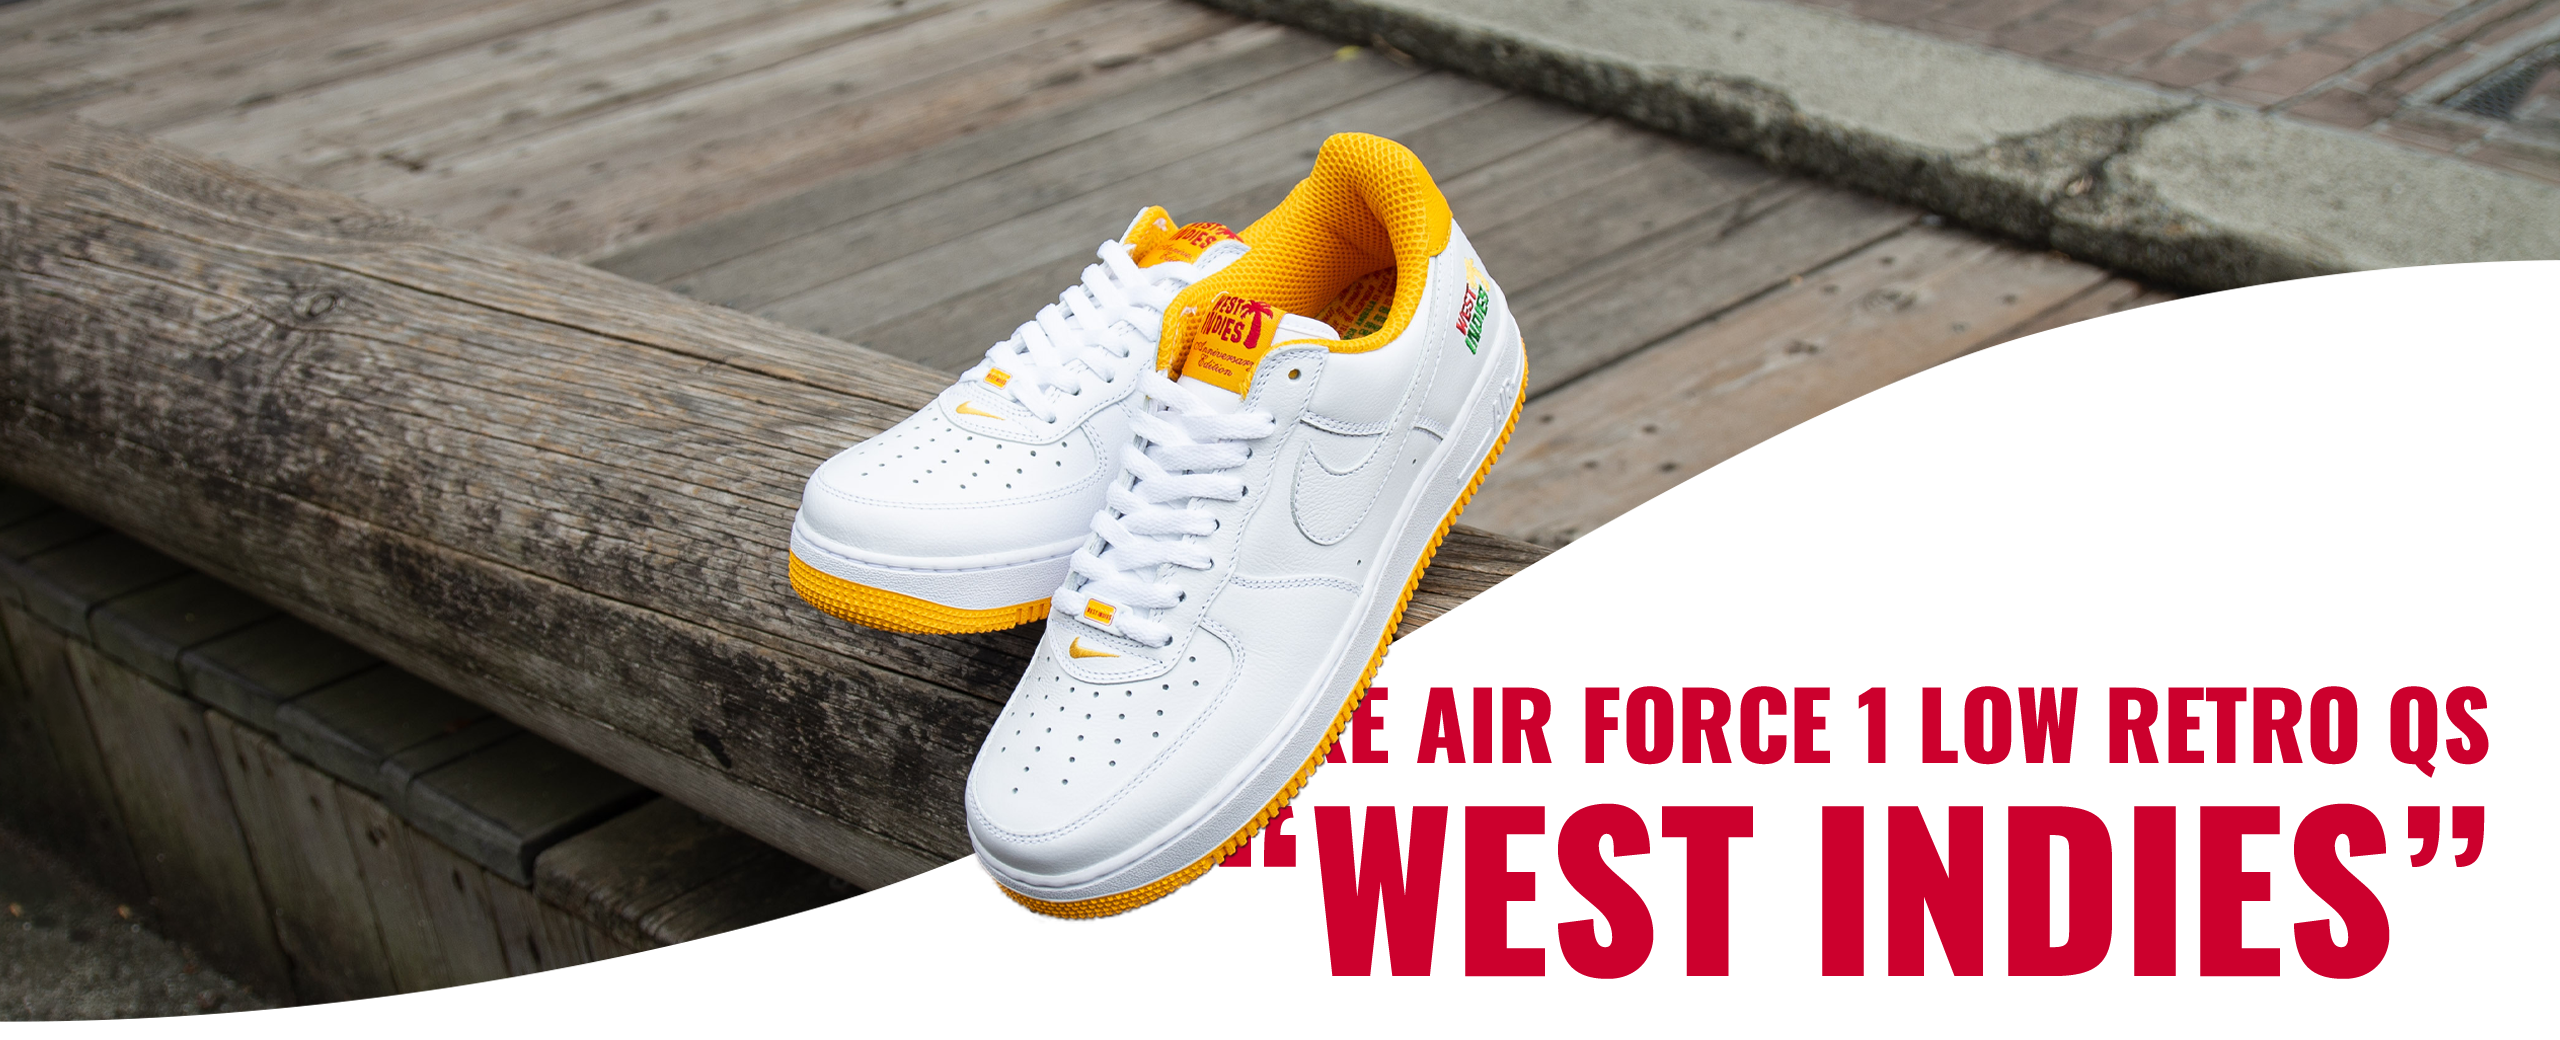 Nike Air Force 1 Low "West Indies"